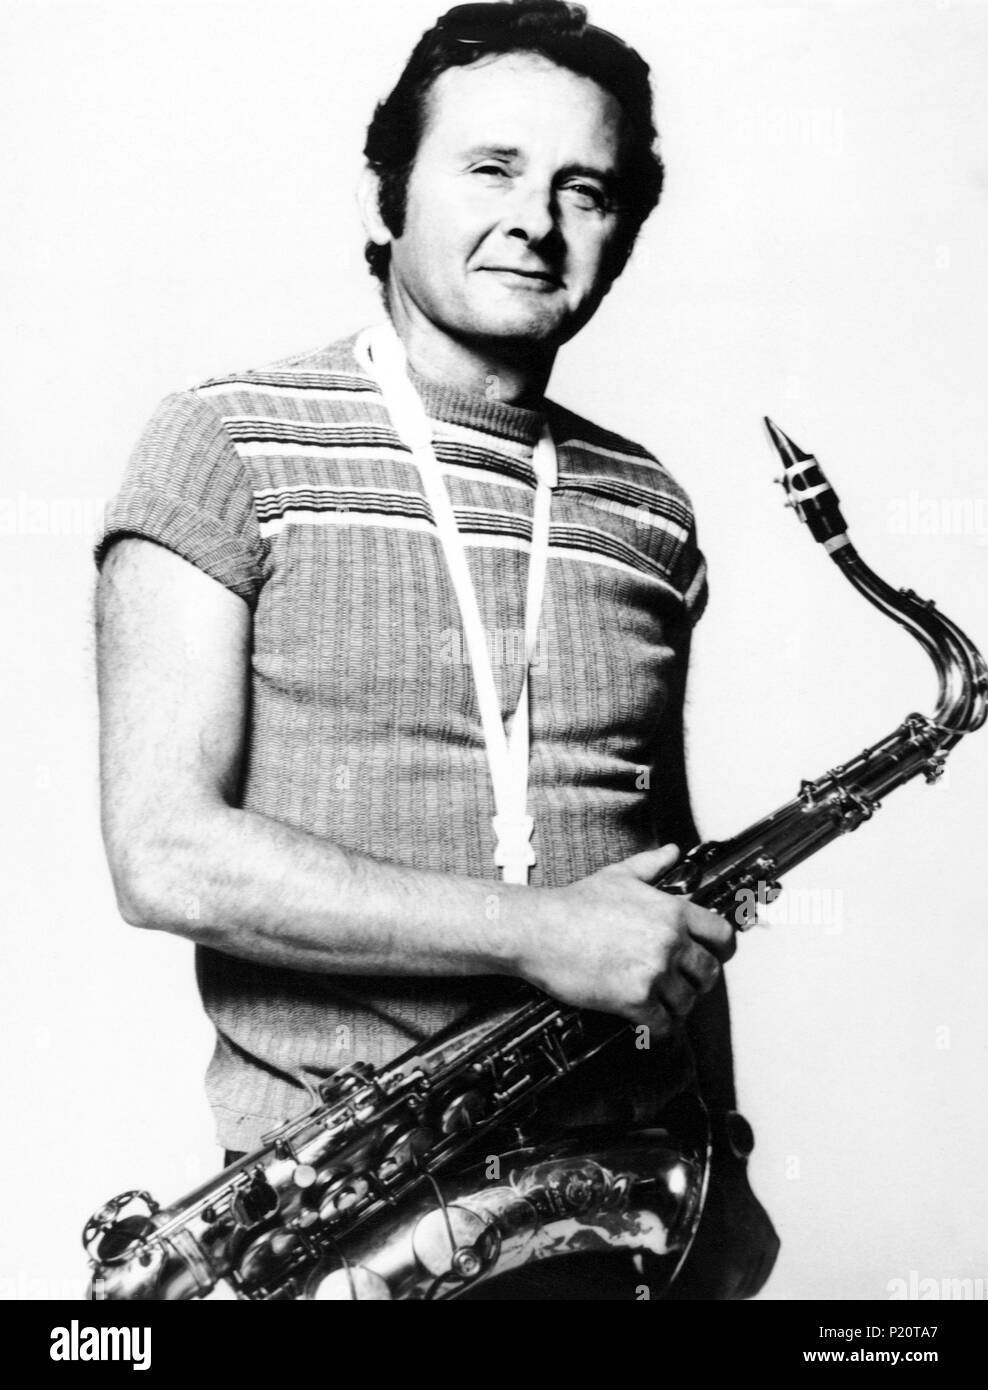 Amerikanischersaxophonist Stan Getz Hält Sein Saxophon. Wallpaper